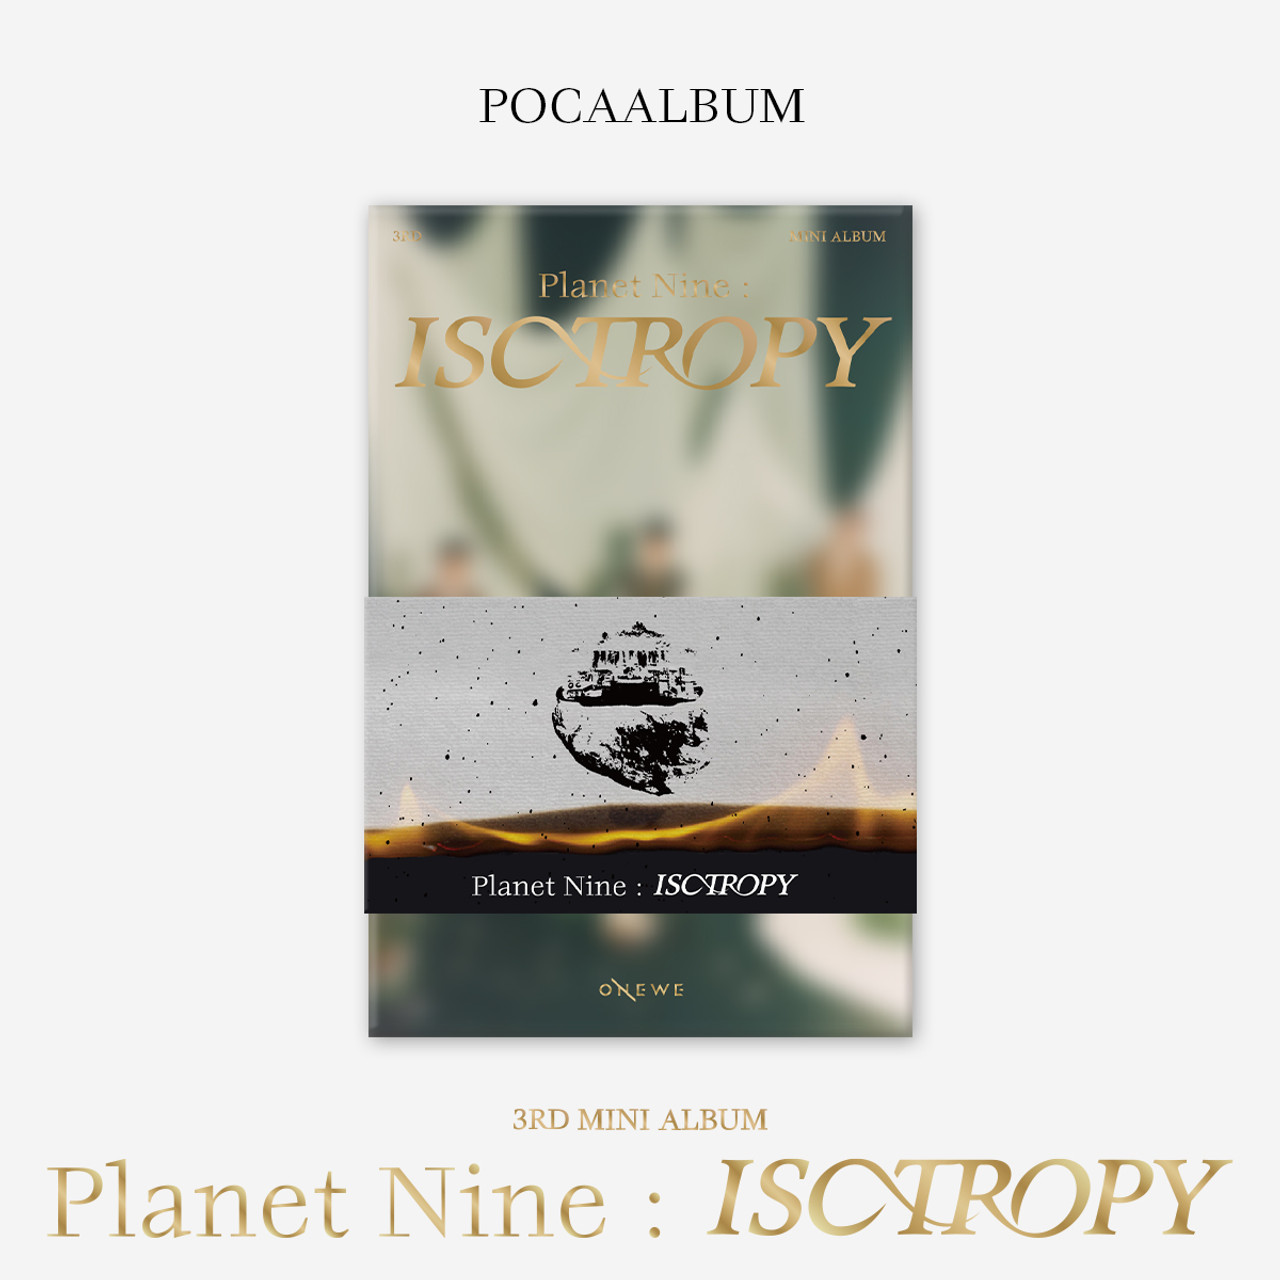 ONEWE  3RD MINI ALBUM Planet Nine  ISOTROPY POCAALBUM